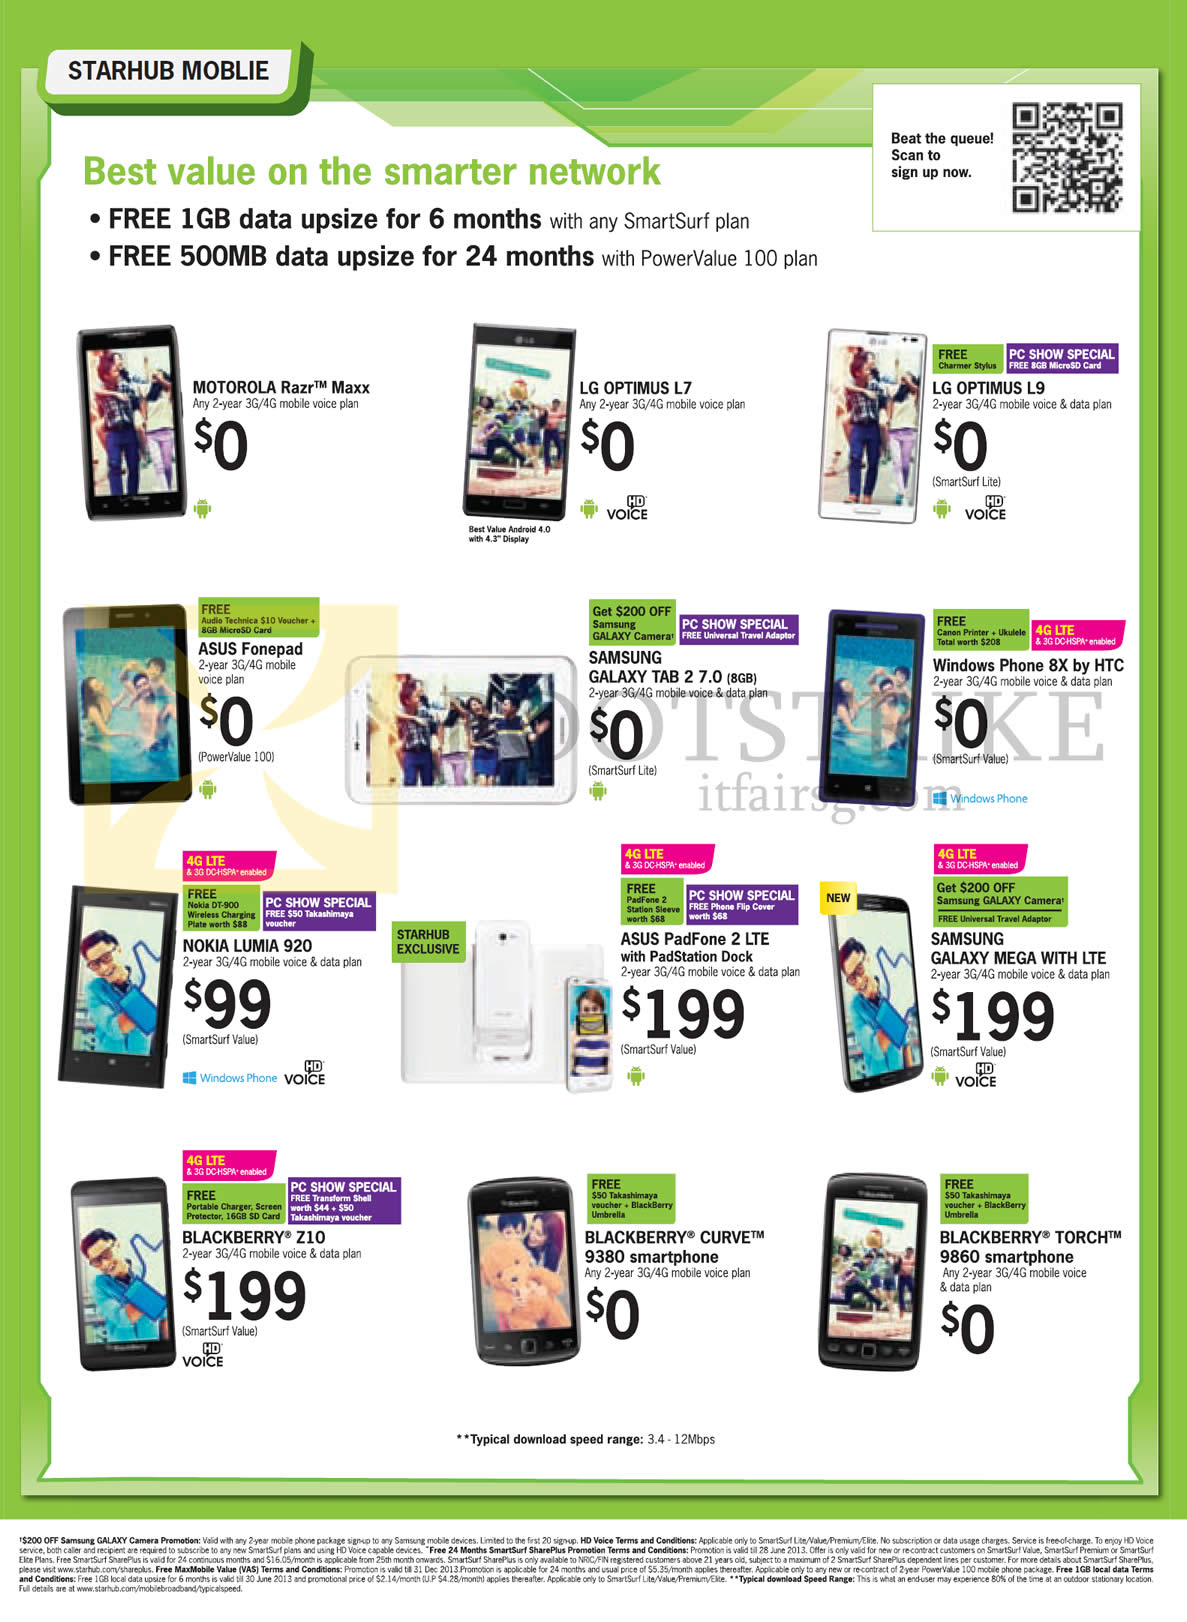 PC SHOW 2013 price list image brochure of Starhub LG Optimus L7, L9, ASUS Fonepad, Padfone 2, Samsung Galaxy Tab 2 7.0, Mega, HTC Windows Phone 8X, Nokia Lumia 920, Blackberry Z10, Curve 9380, Torch 9860